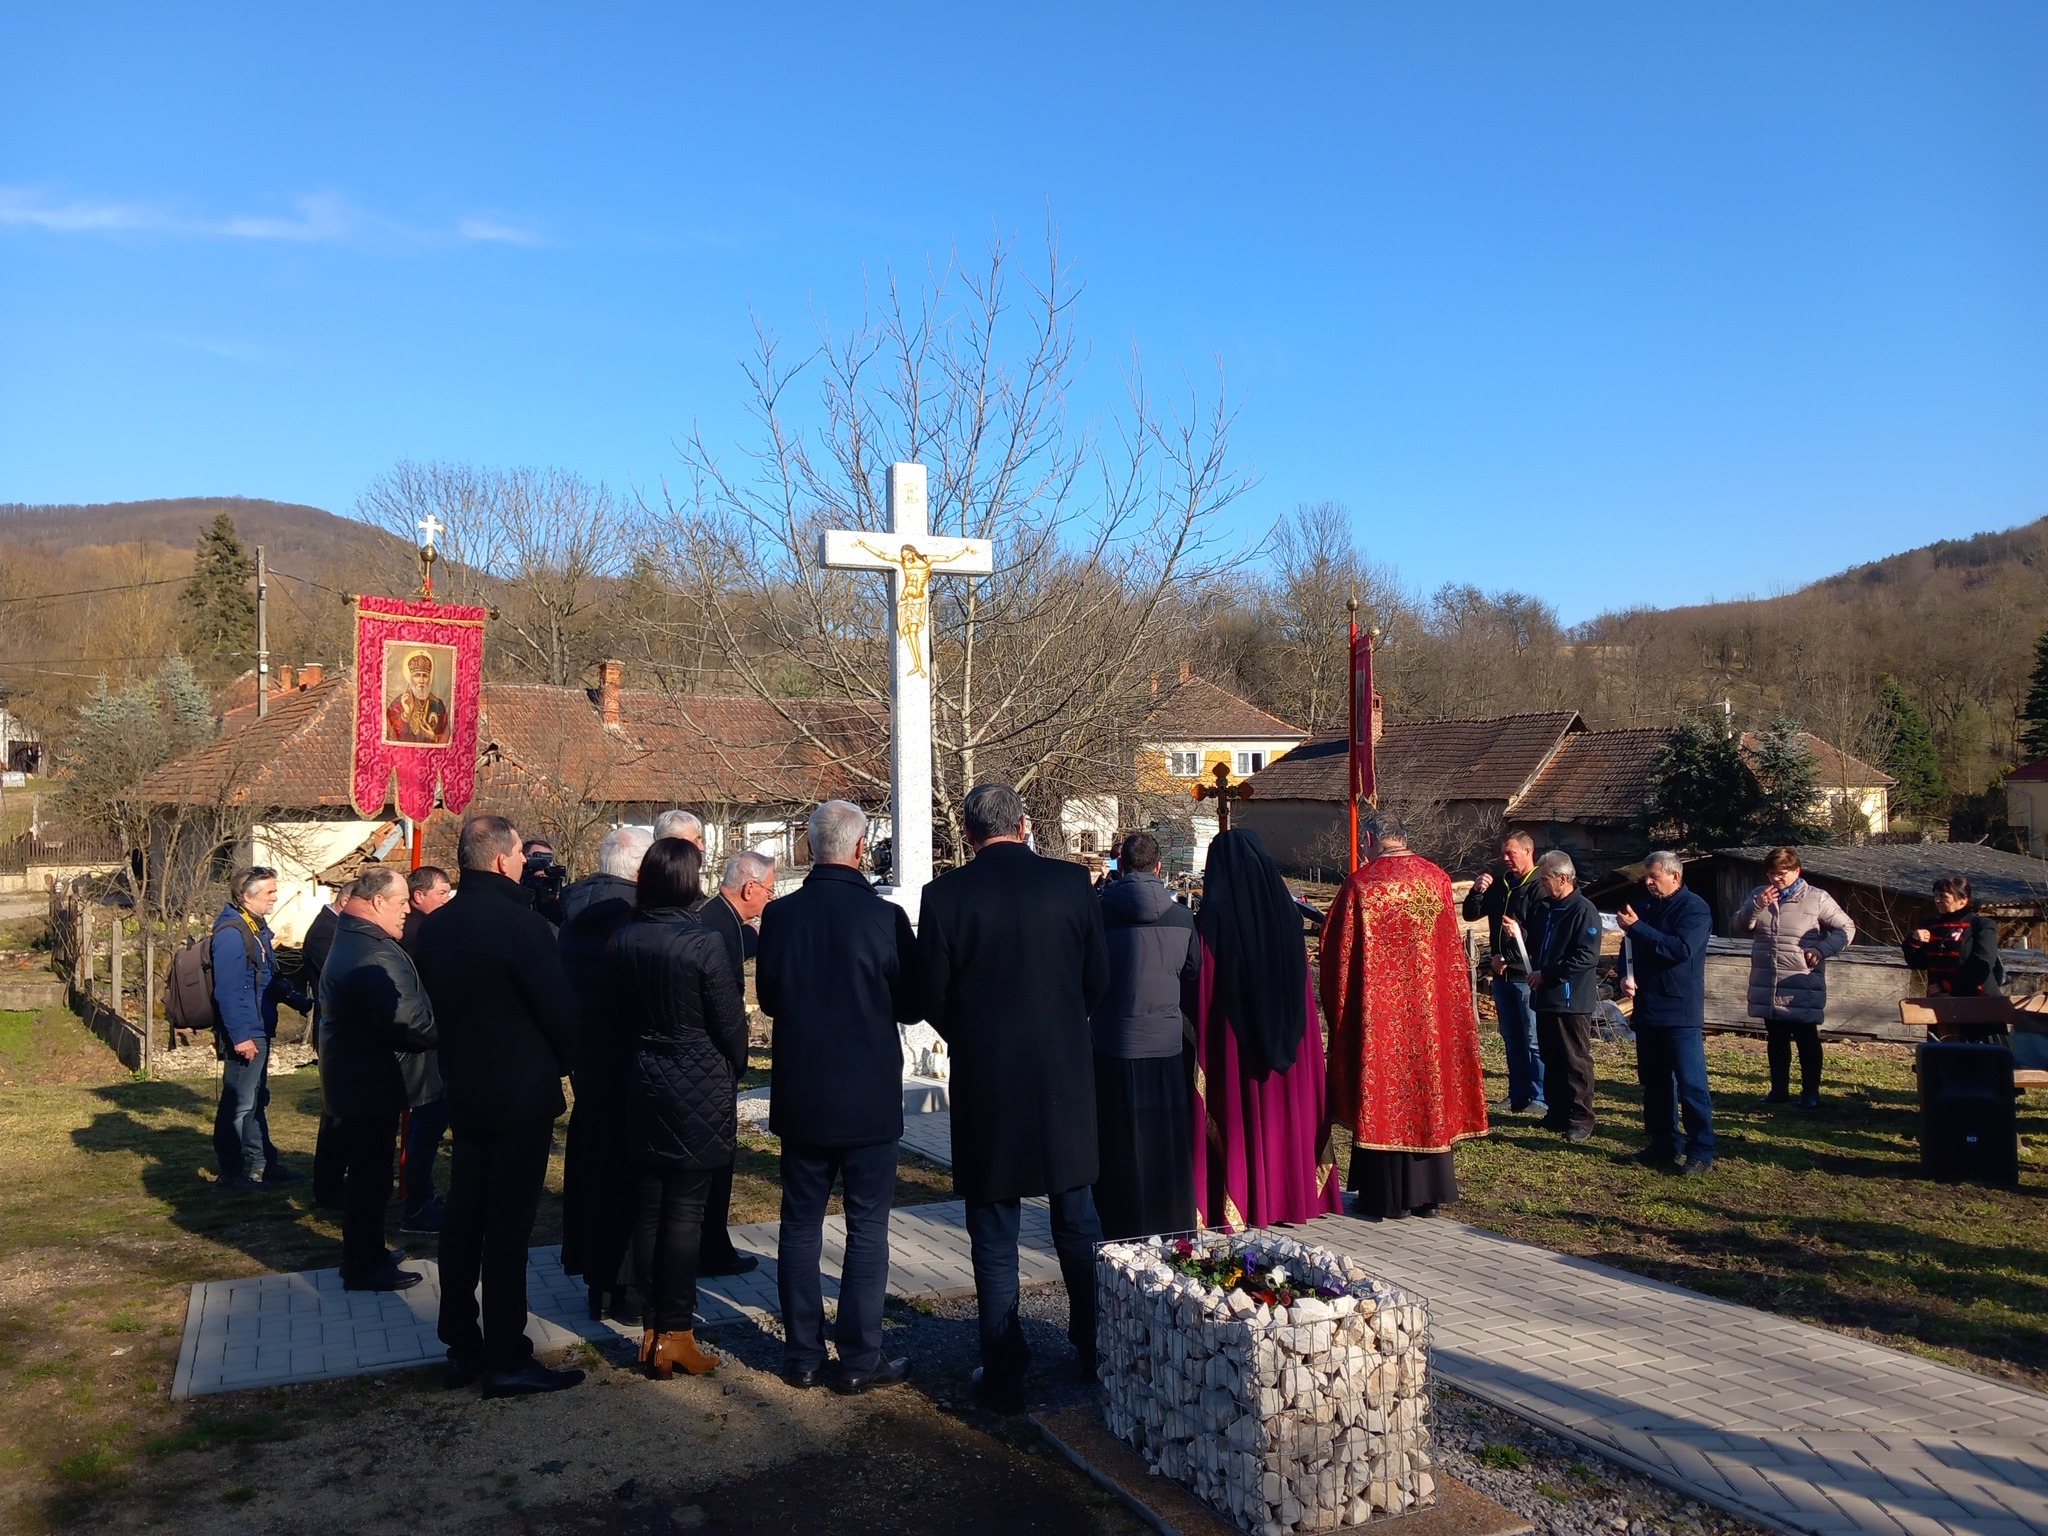 Ruthenisches Kreuz als Bekenntnis zu den christlichen Werten in Ungarn